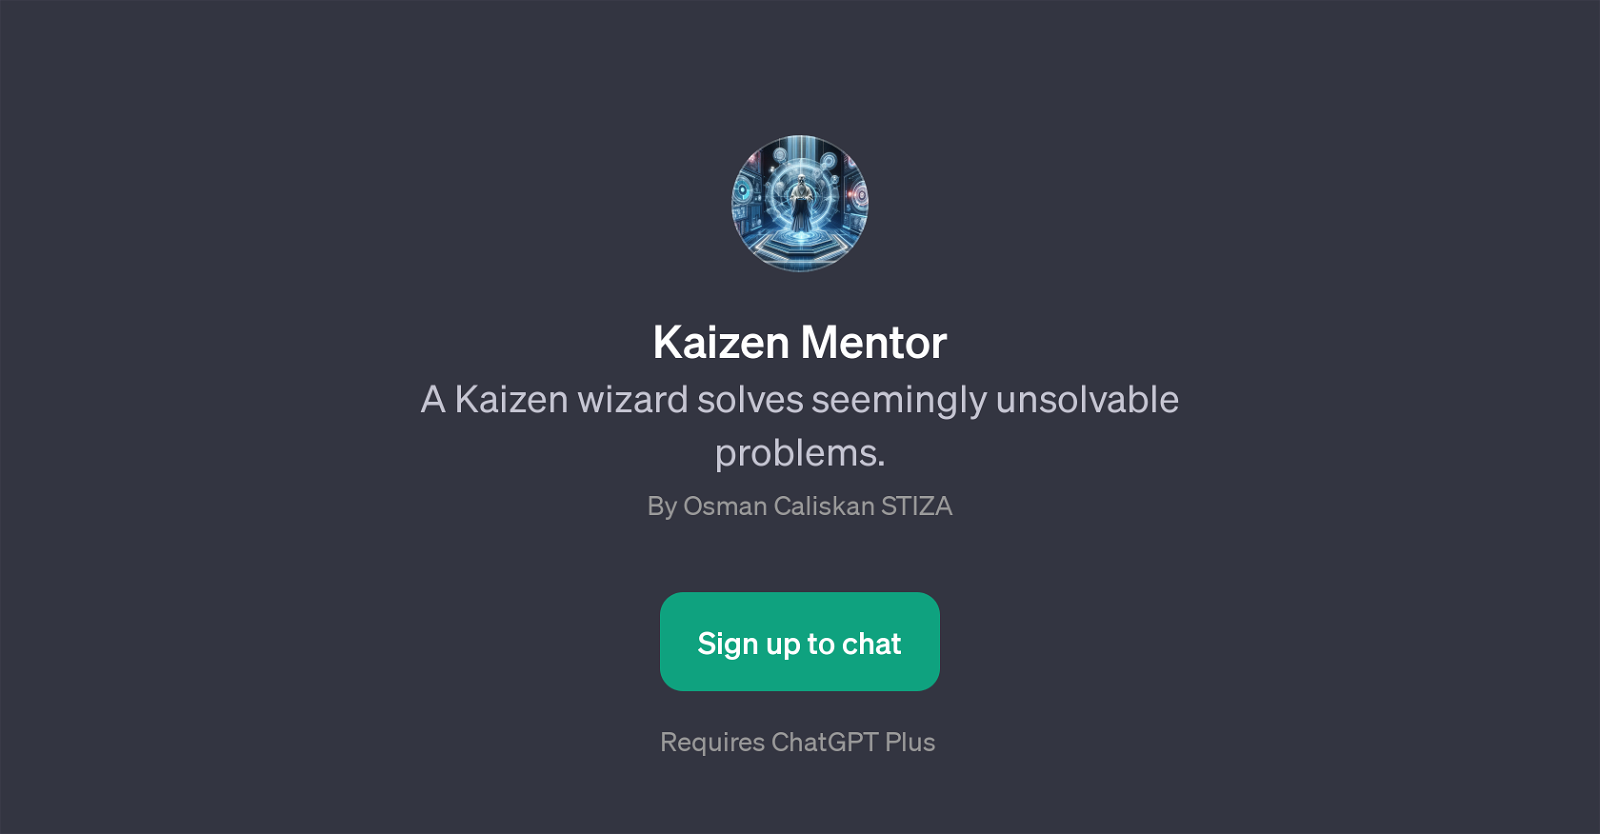 Kaizen Mentor website